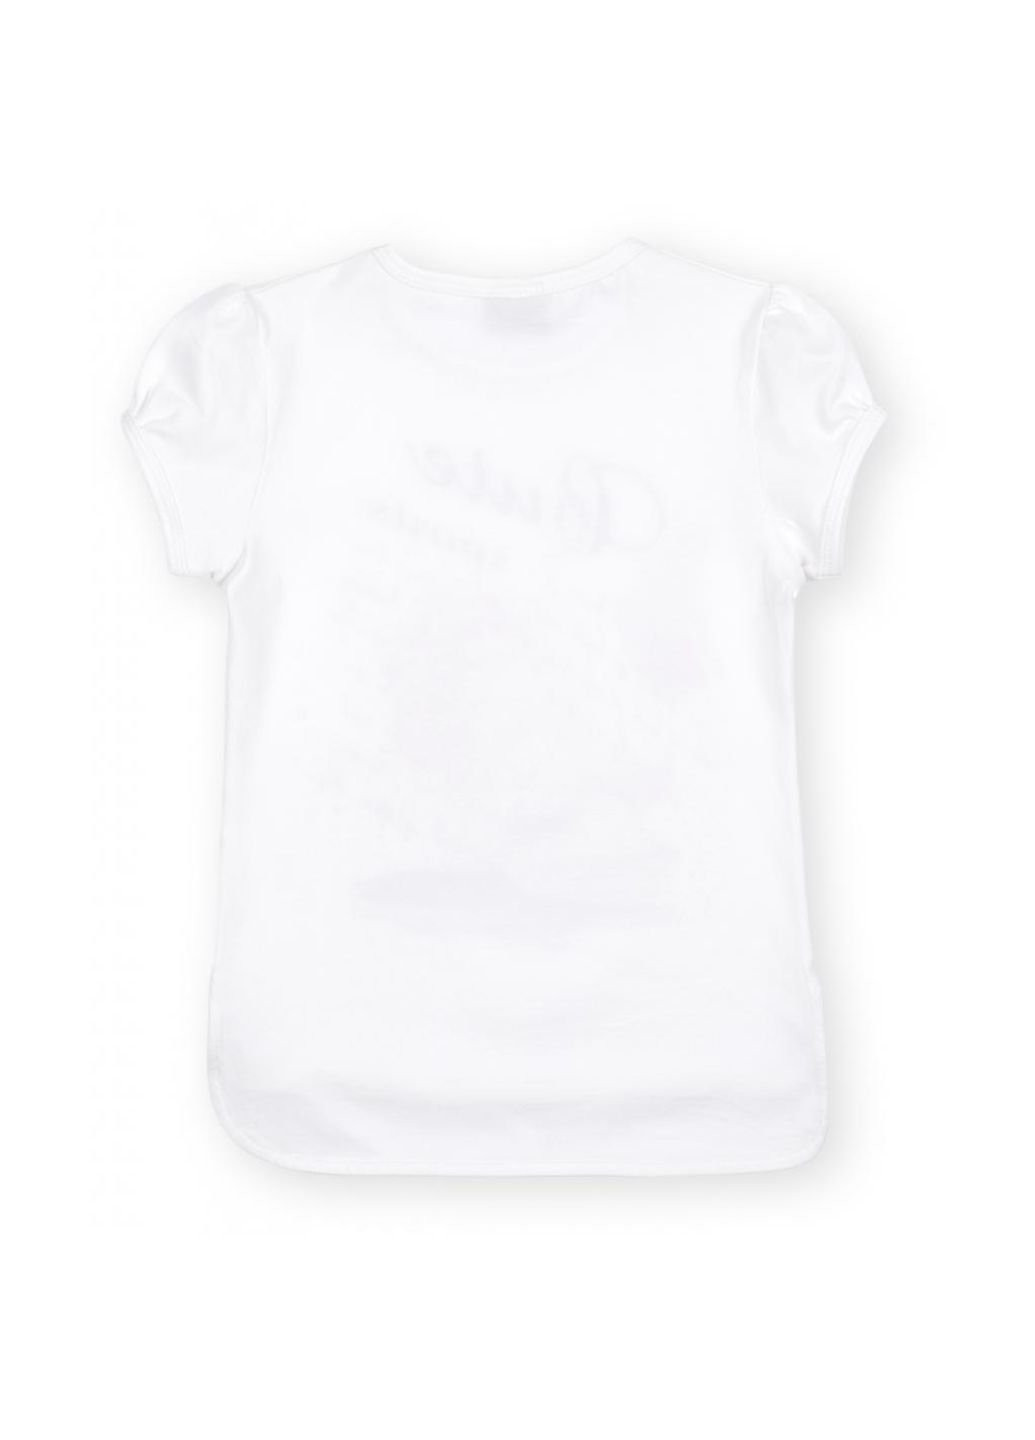 Серая демисезонная футболка детская с кедом (8295-116g-gray) Breeze